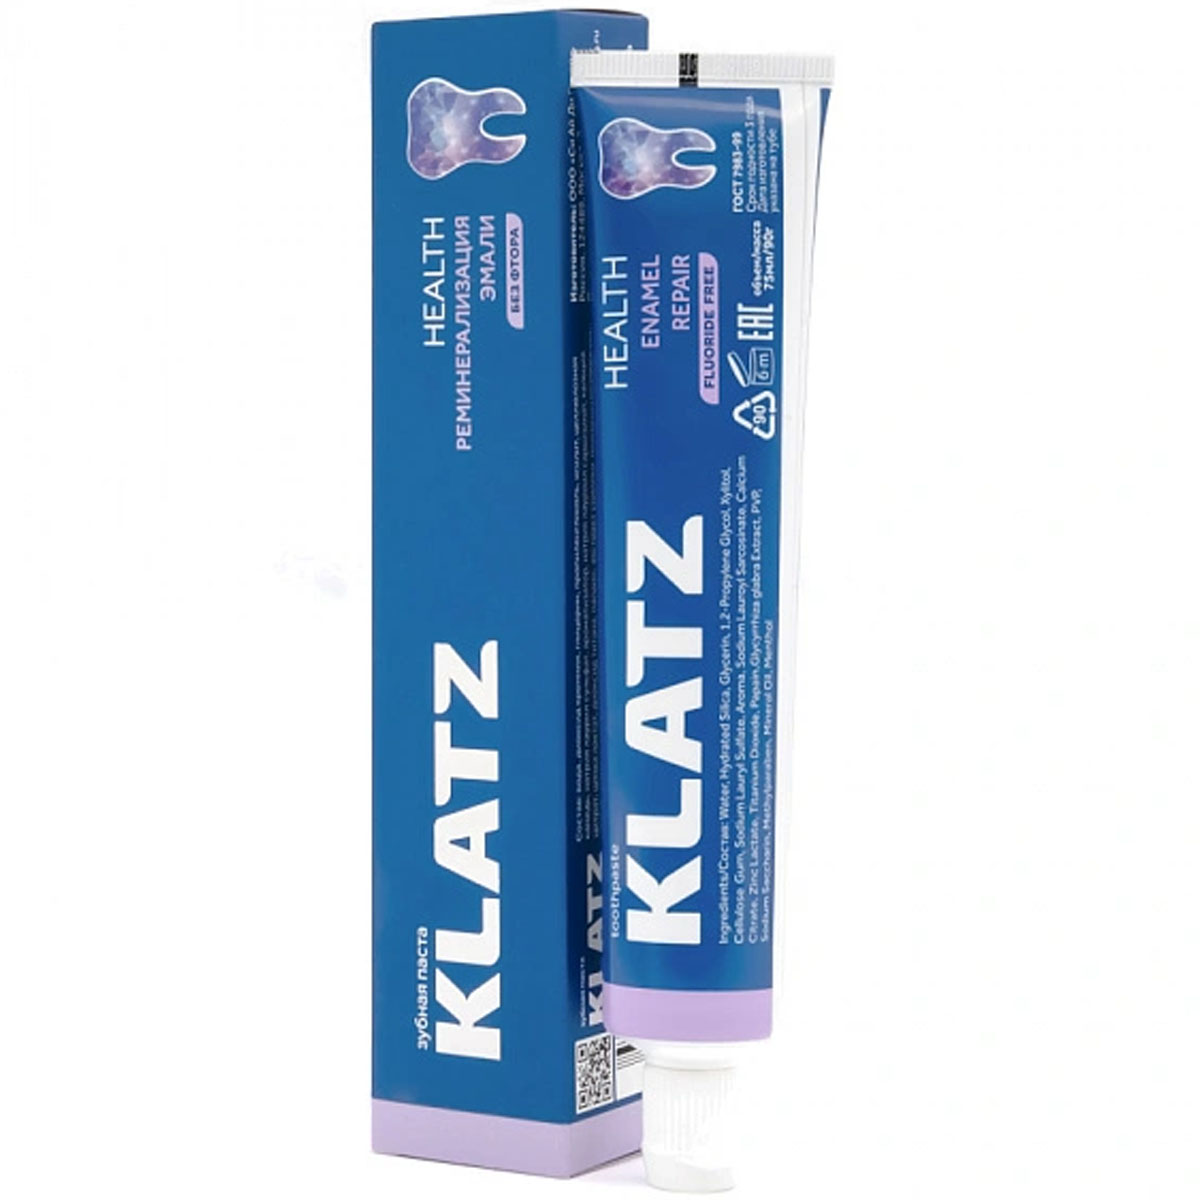 Klatz Health реминерализация эмали, 75 мл, Зубная паста Klatz  - купить